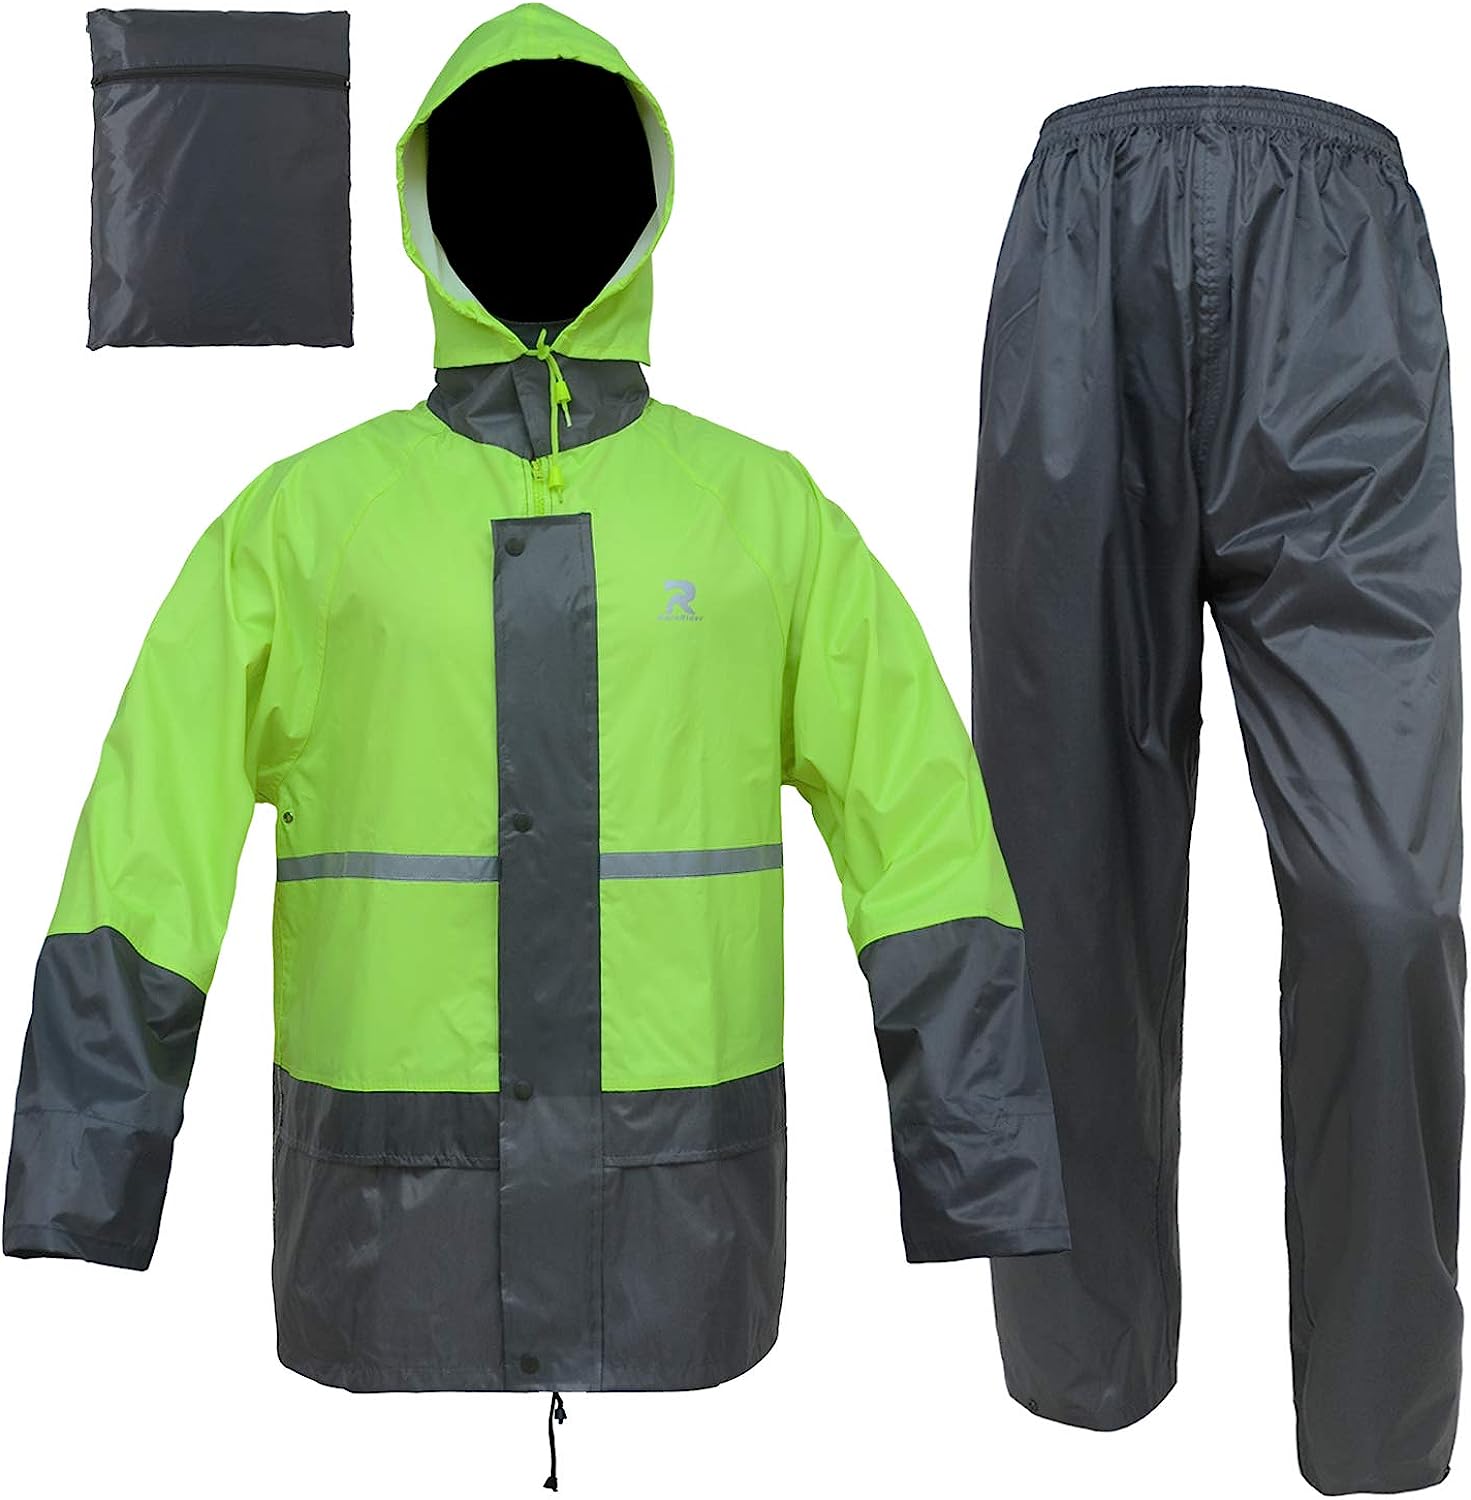  Rain Suits for Men Women Waterproof Heavy Duty